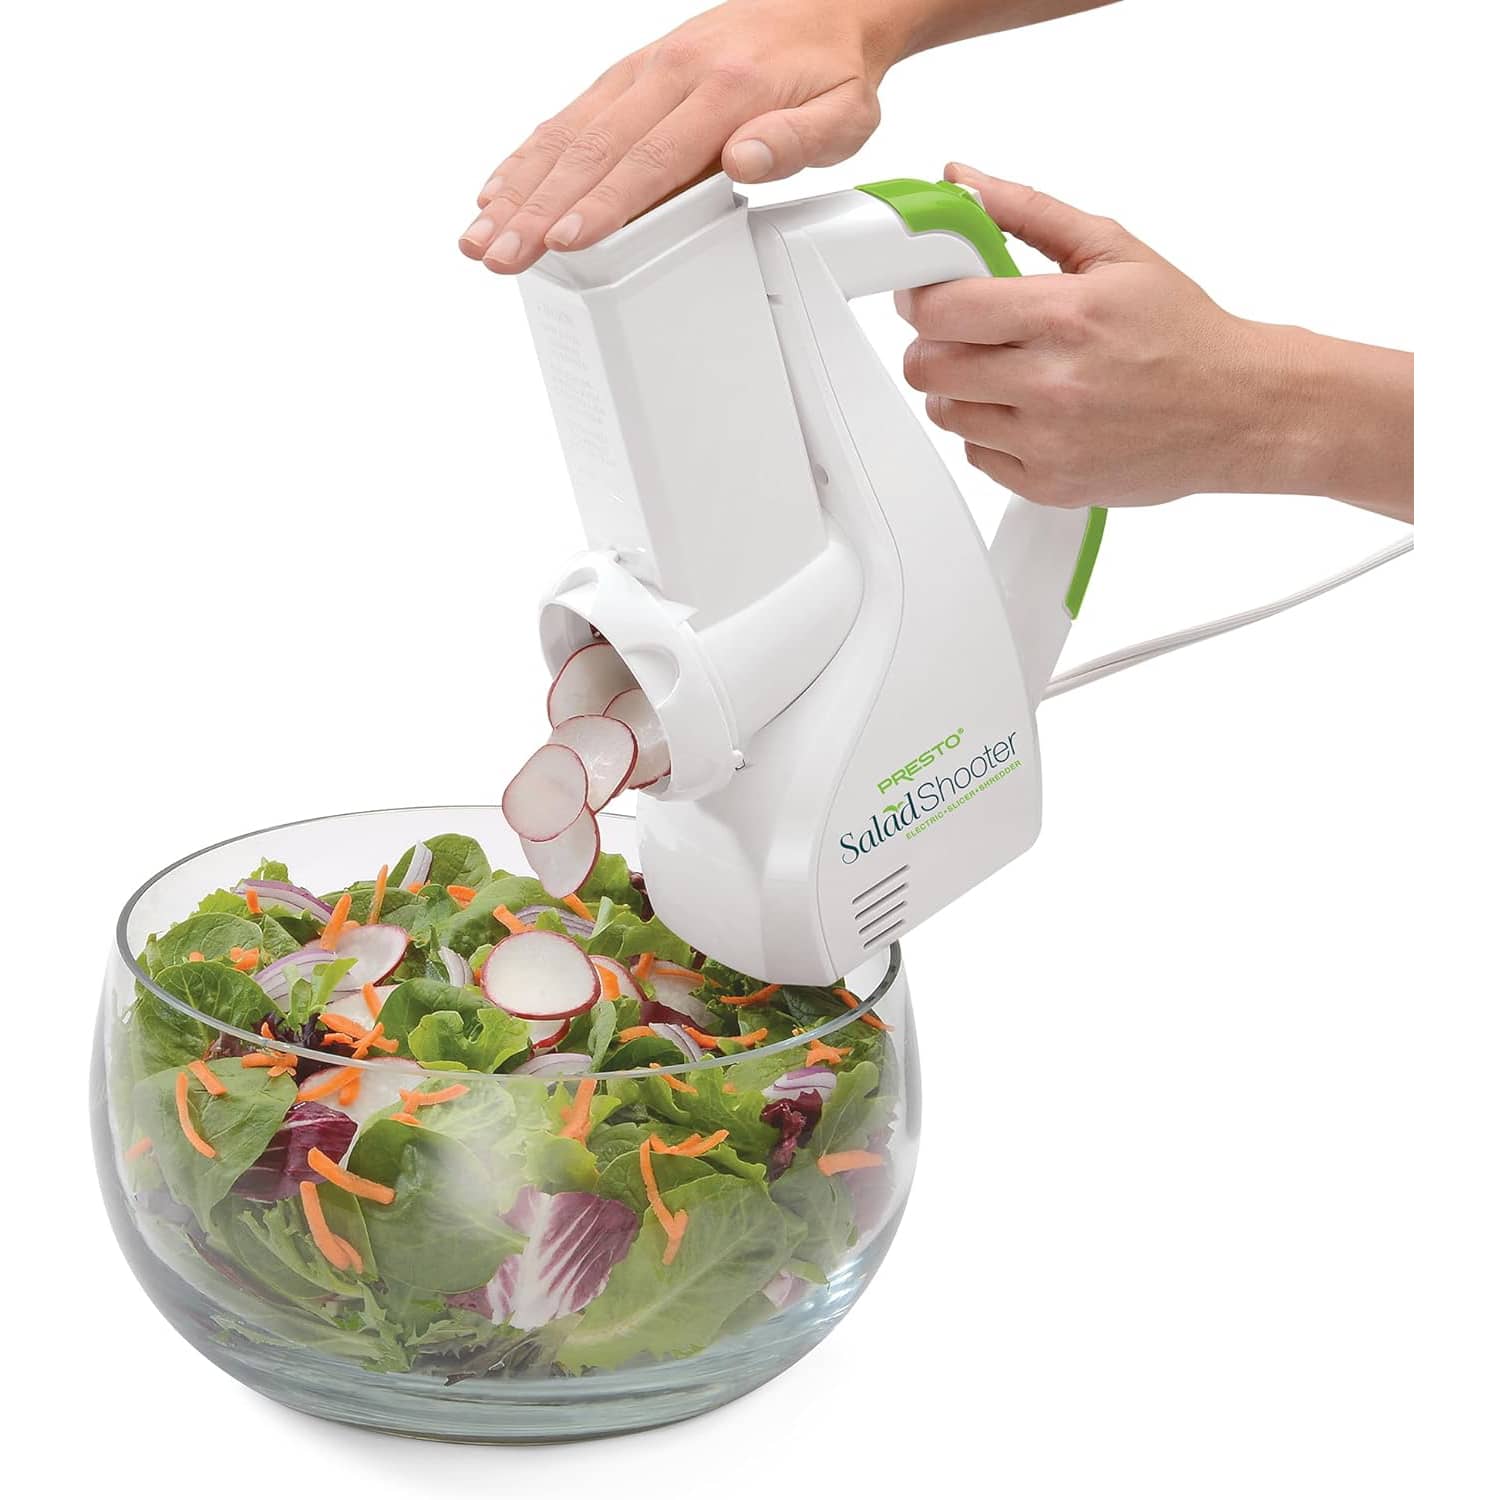 Salad machine Electric Spiralizer Vegetable Slicer Shredder